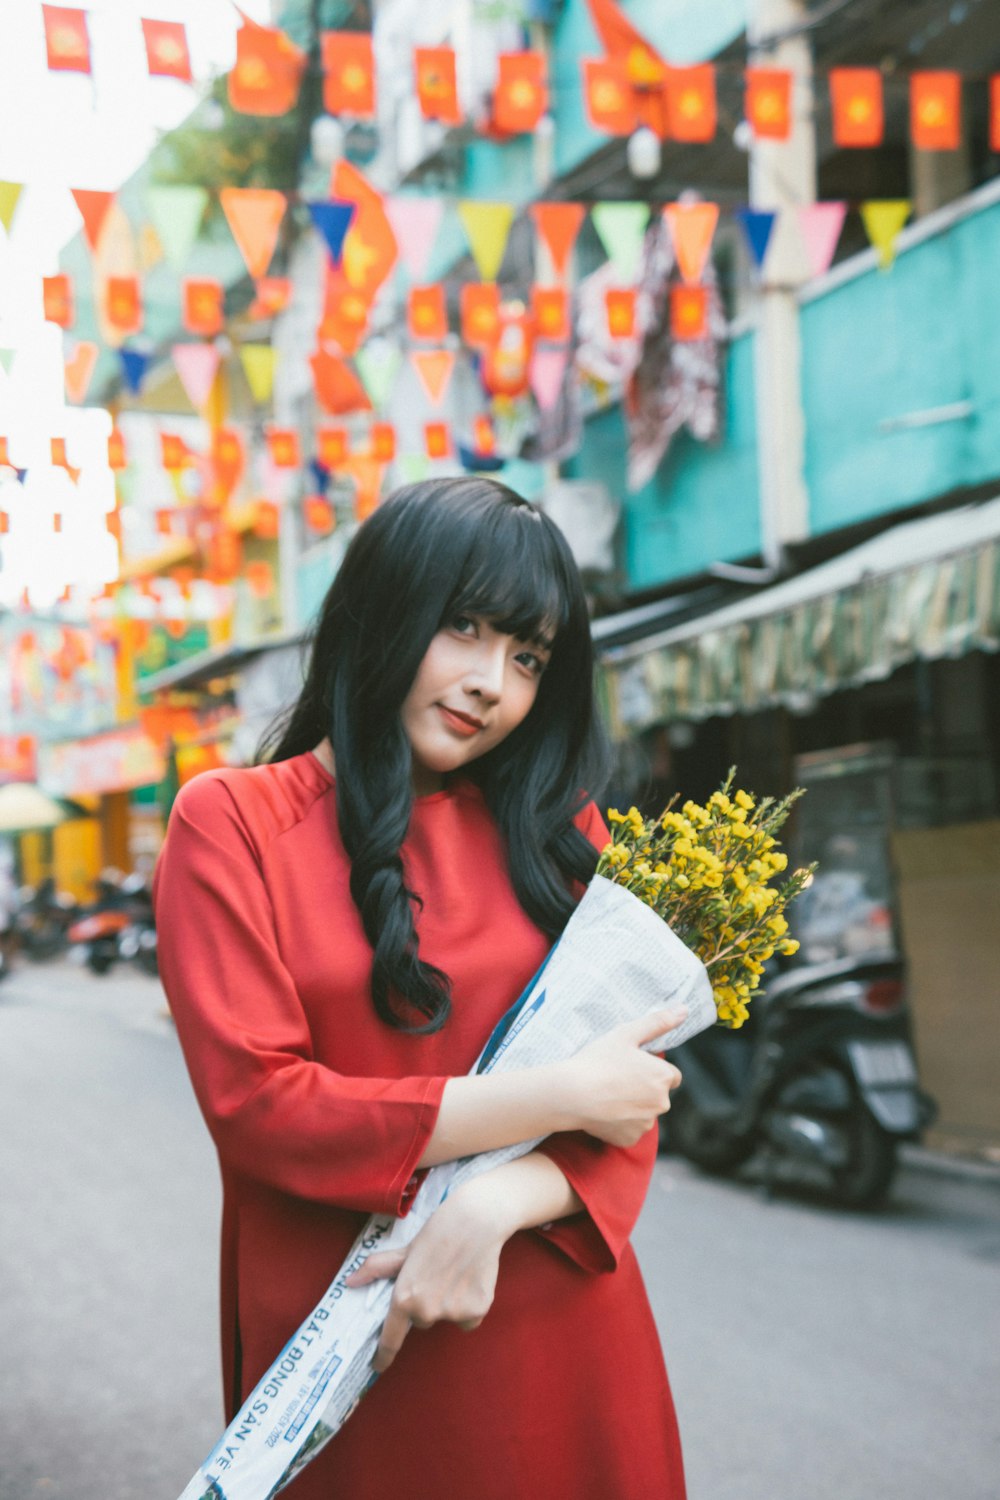 Eine Frau in einem roten Kleid hält einen Blumenstrauß